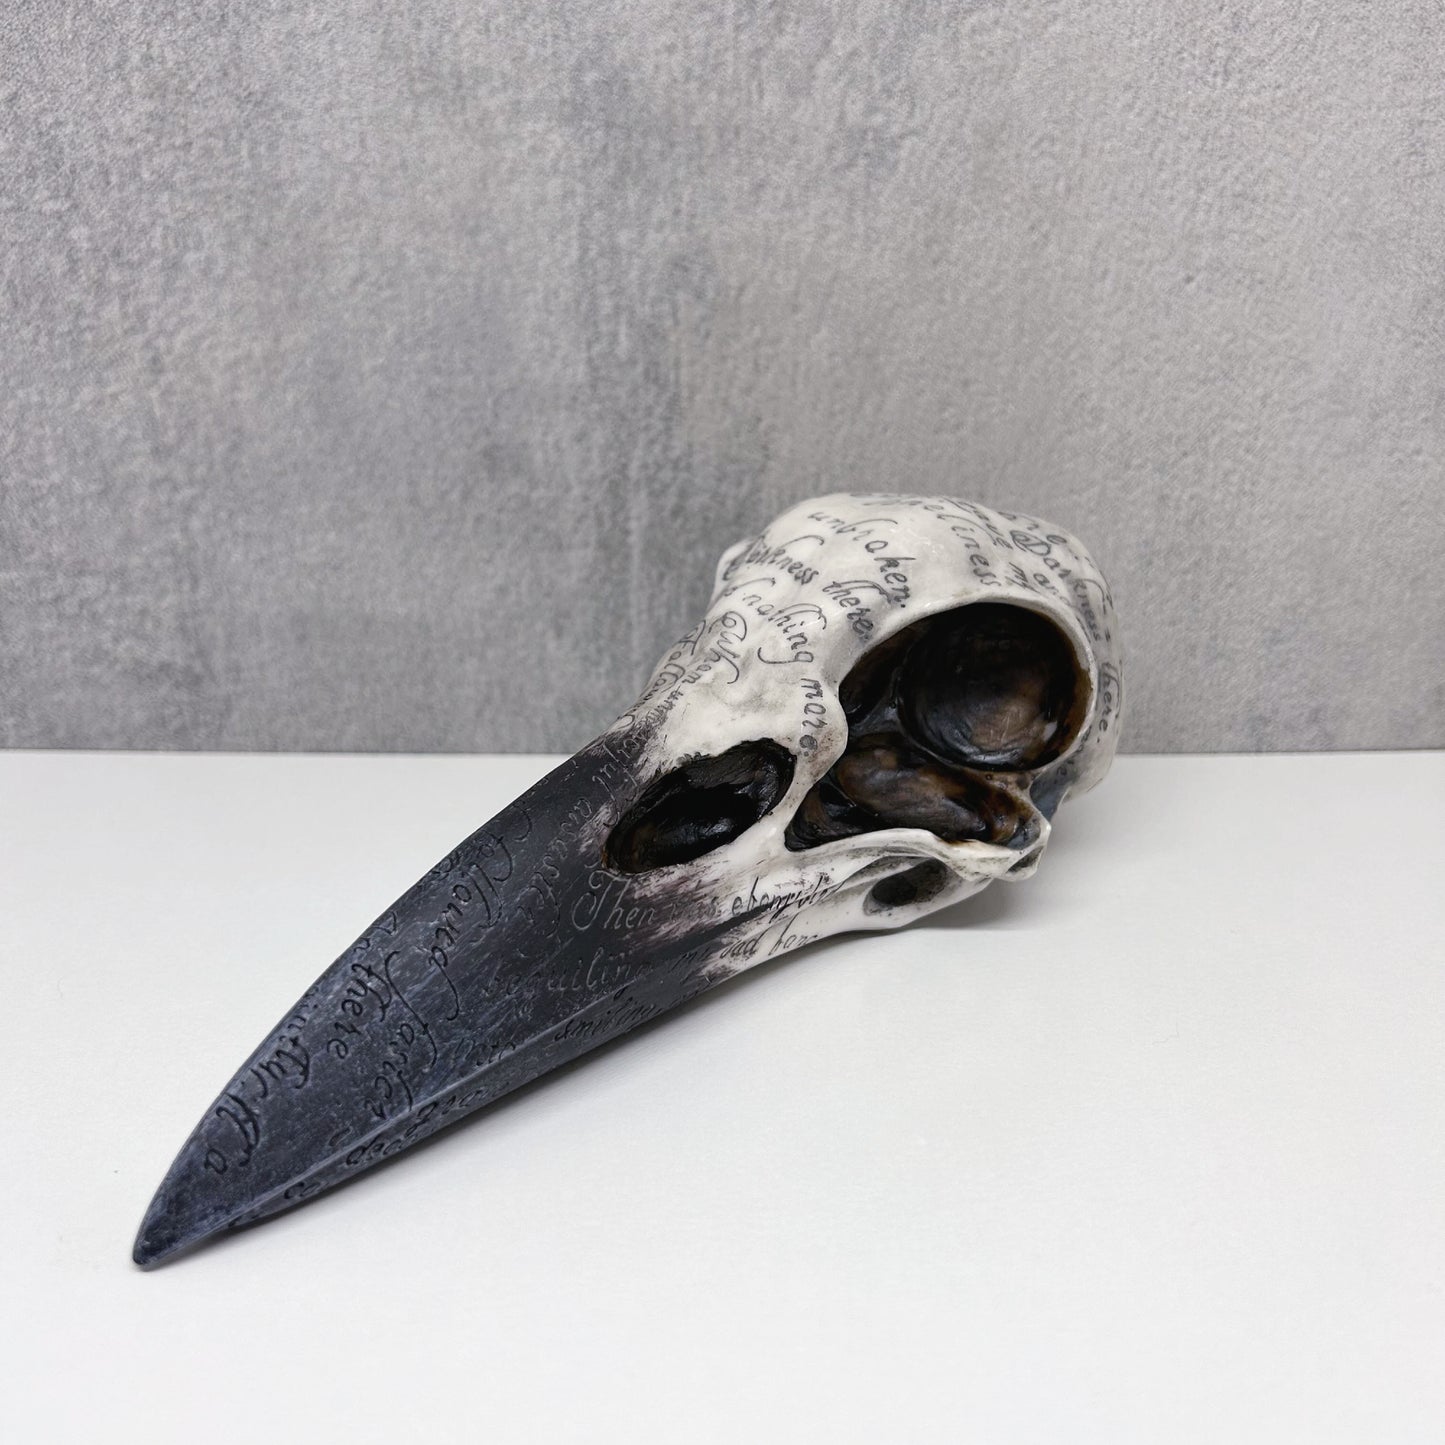 Edgar's Raven Skull Figurine